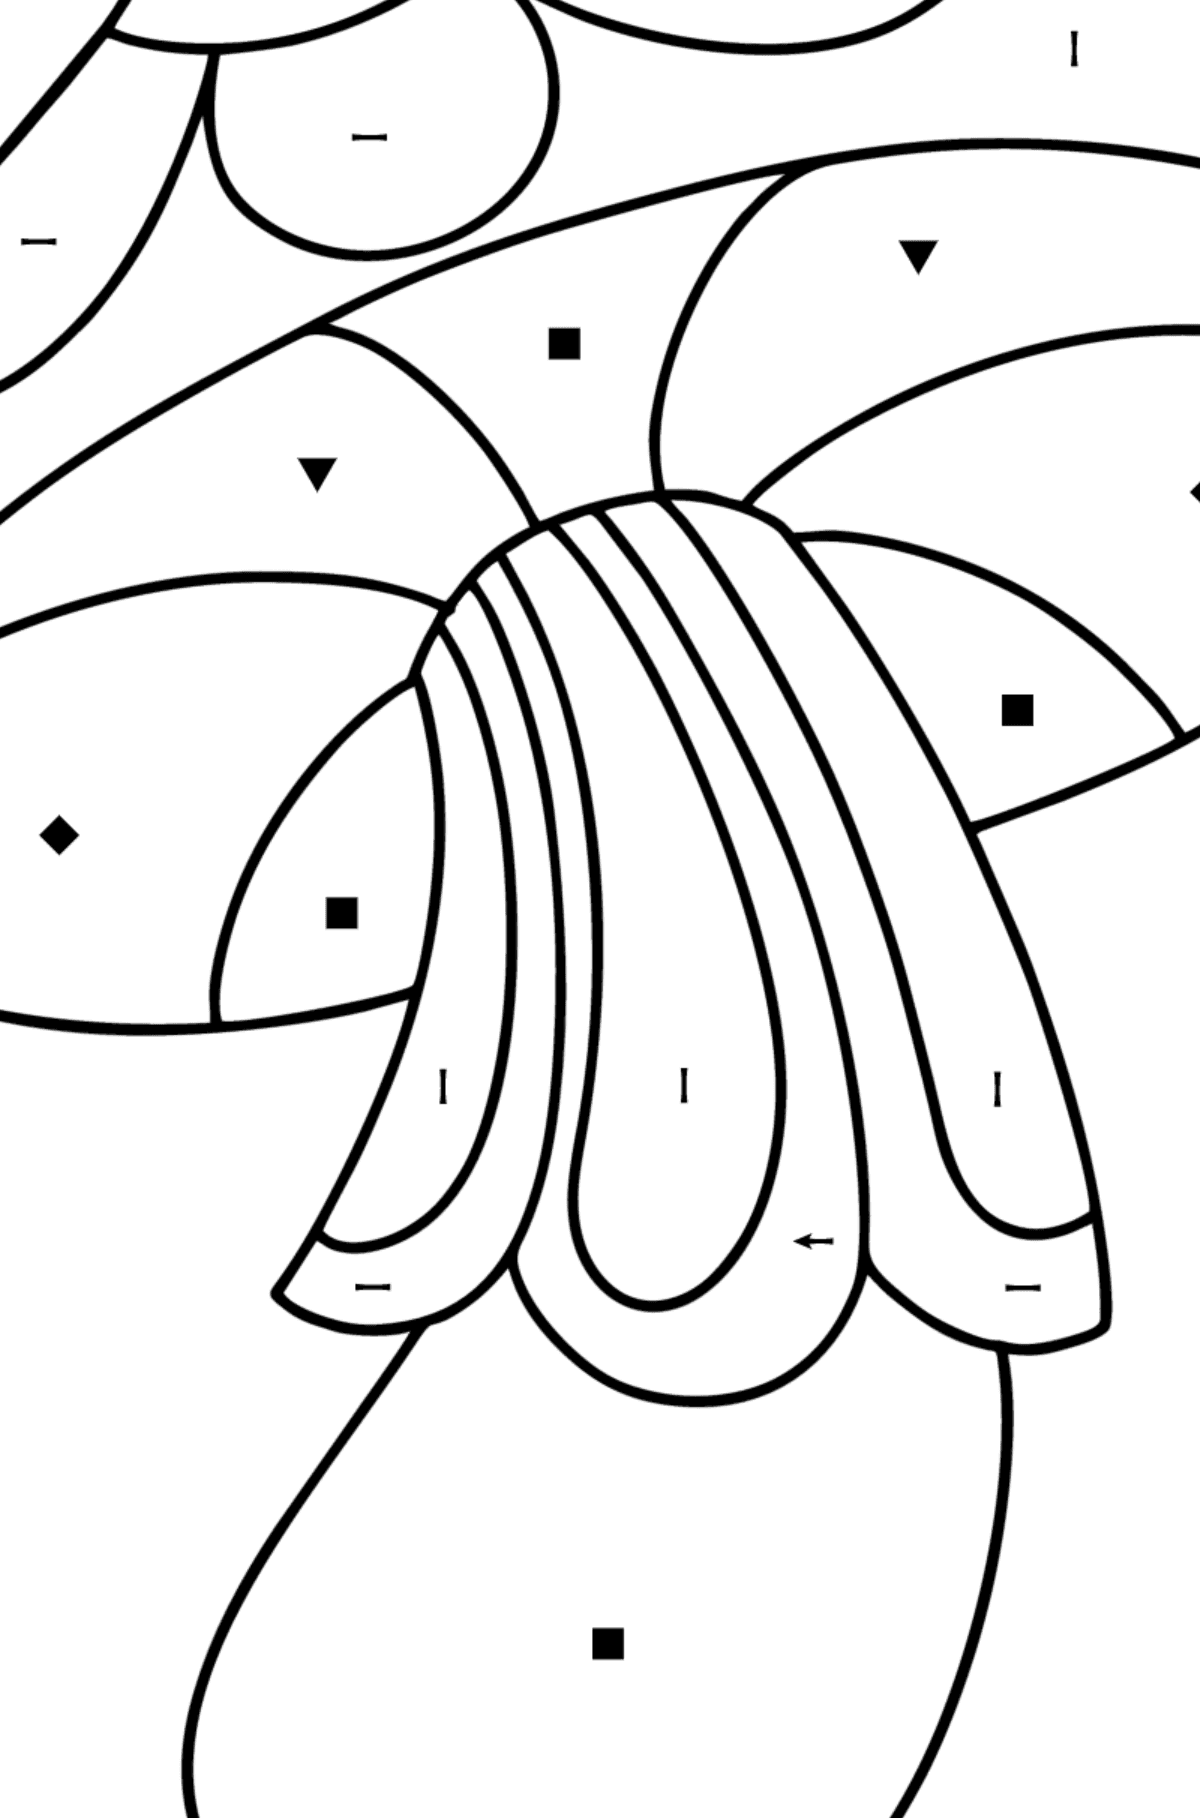 Розмальовка з грибами дзентангл - Розмальовки за символами для дітей